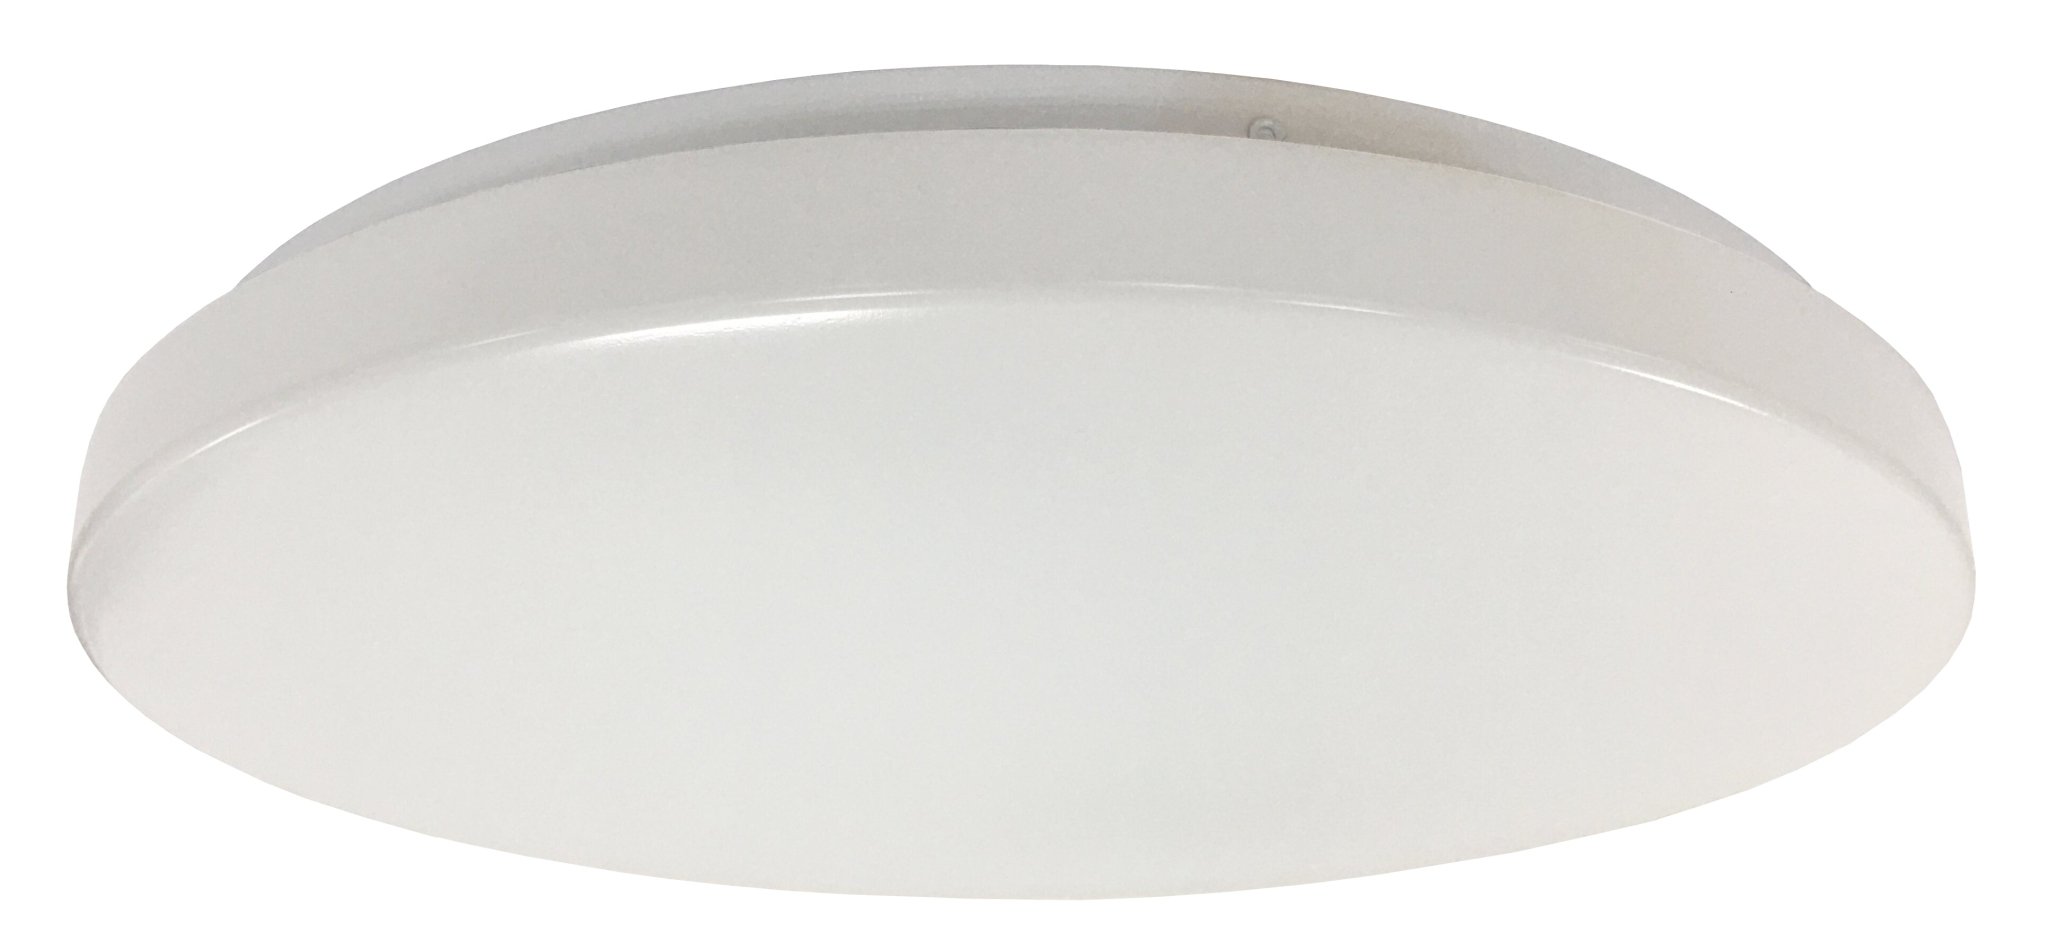 Orbit LED Oyster Light Tricolour in White 18w - Mases LightingMartec